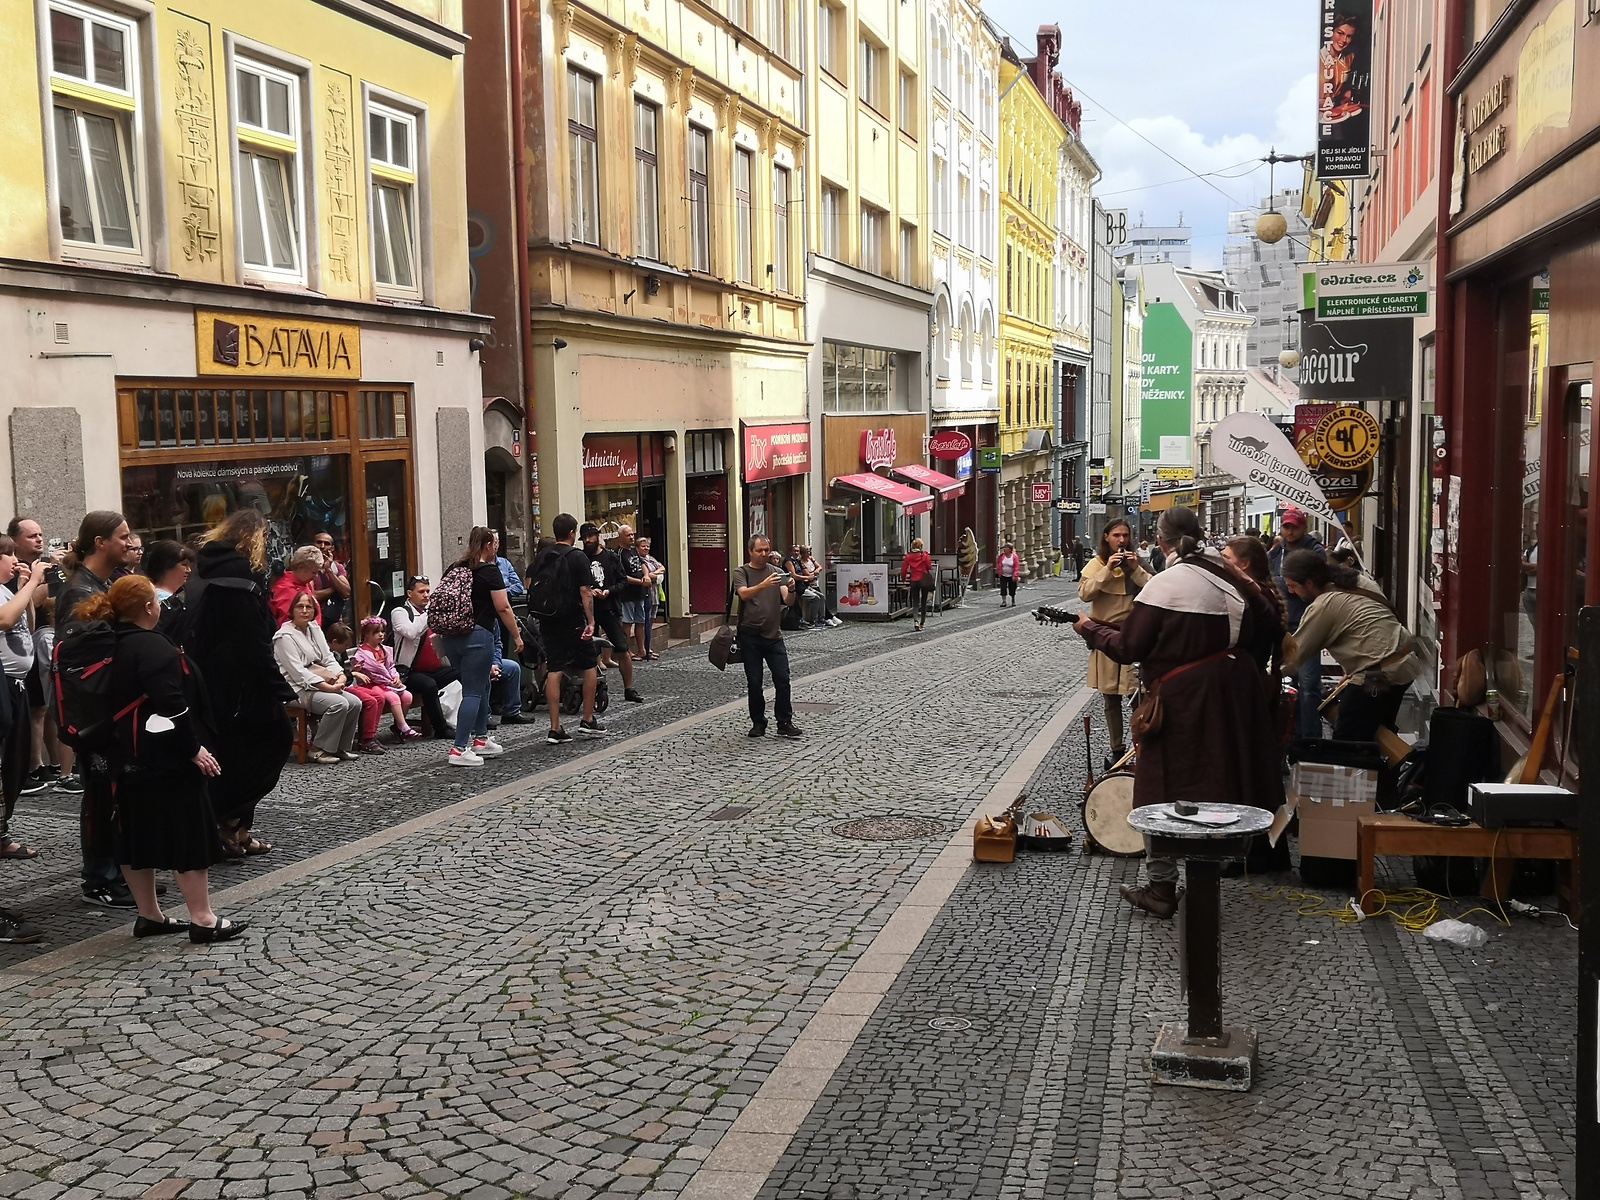 Pražskou ulicí v Liberci zněla středověká hudba. Skupina sklidila ovace -  Liberecký deník